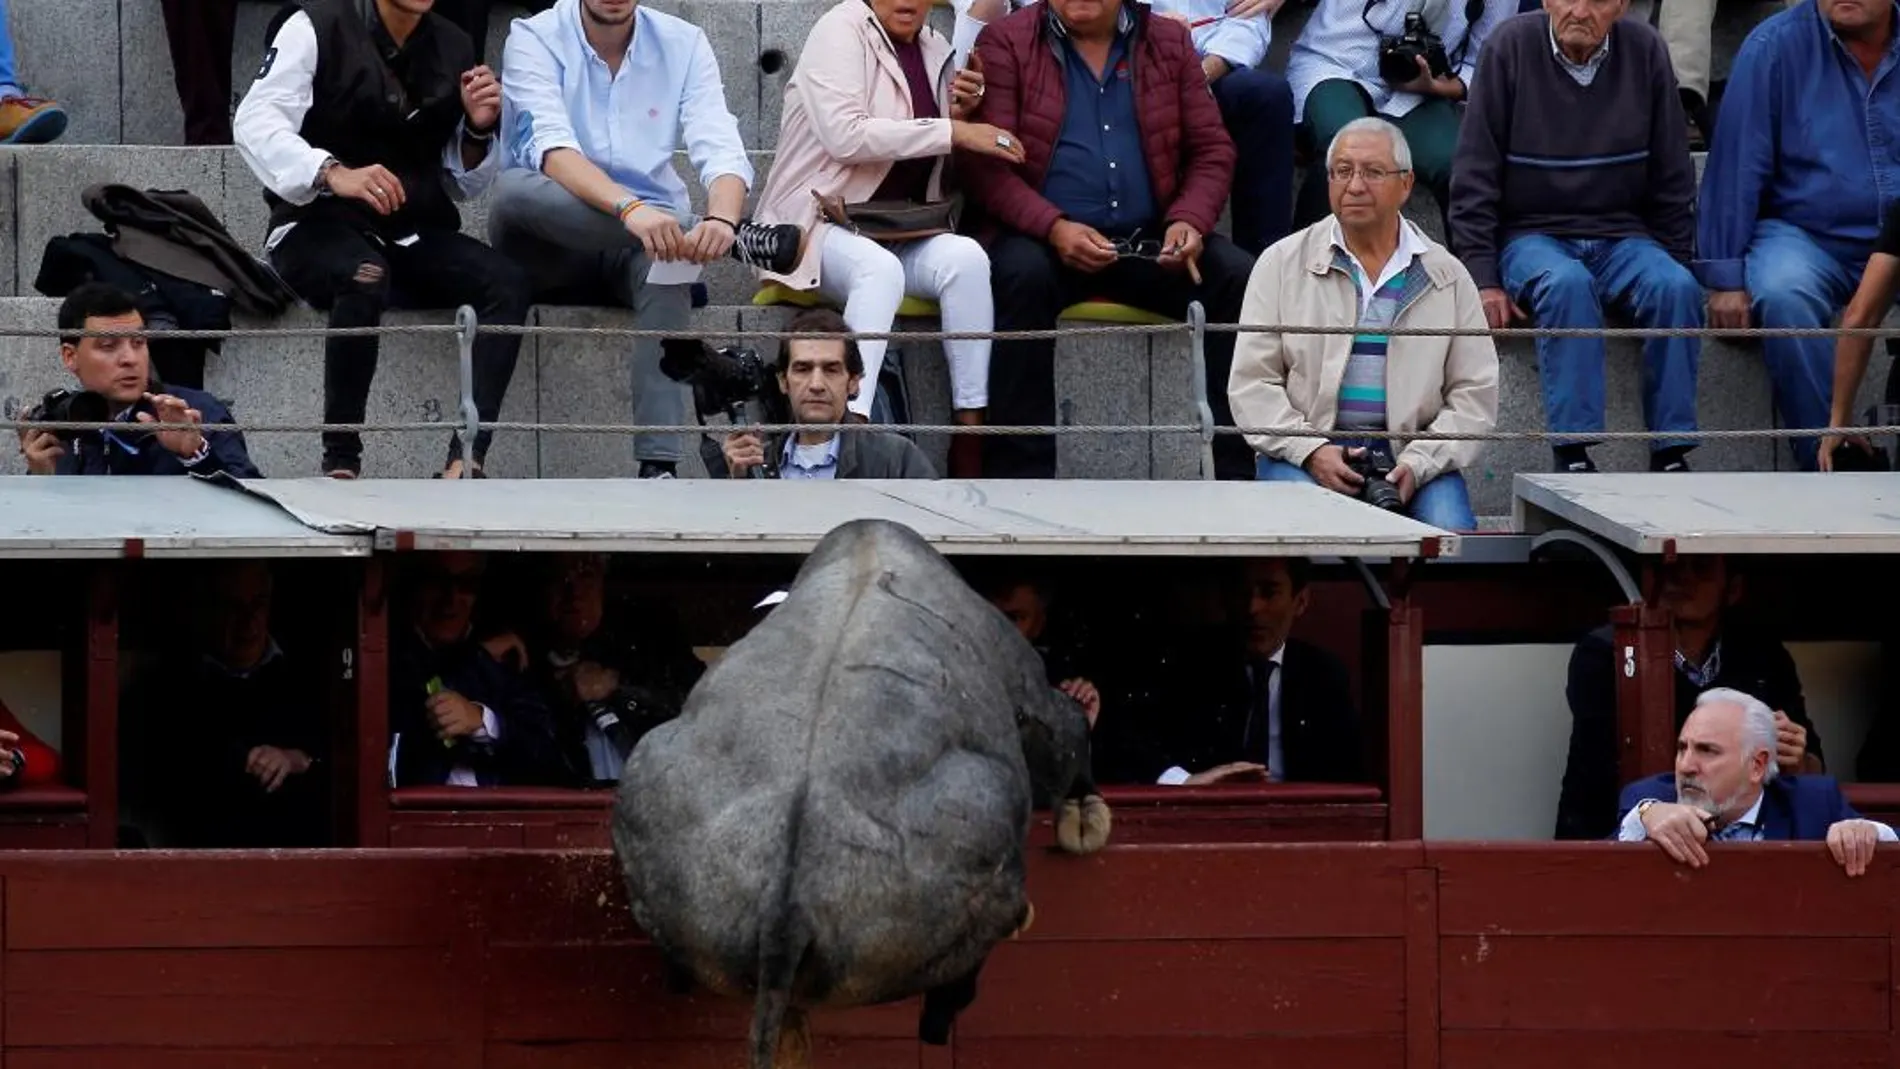 Momento en el que el toro salta la barrera. Foto: Víctor Lerena/EFE